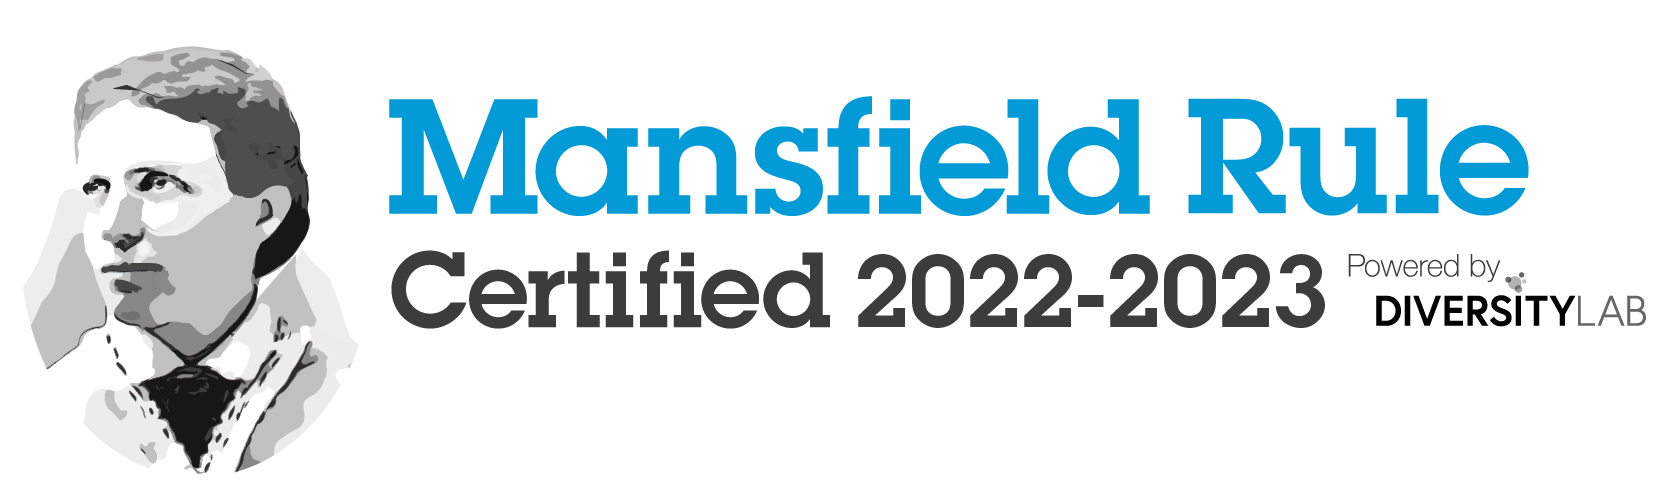 Mansfield Rule Certified 2022-2023